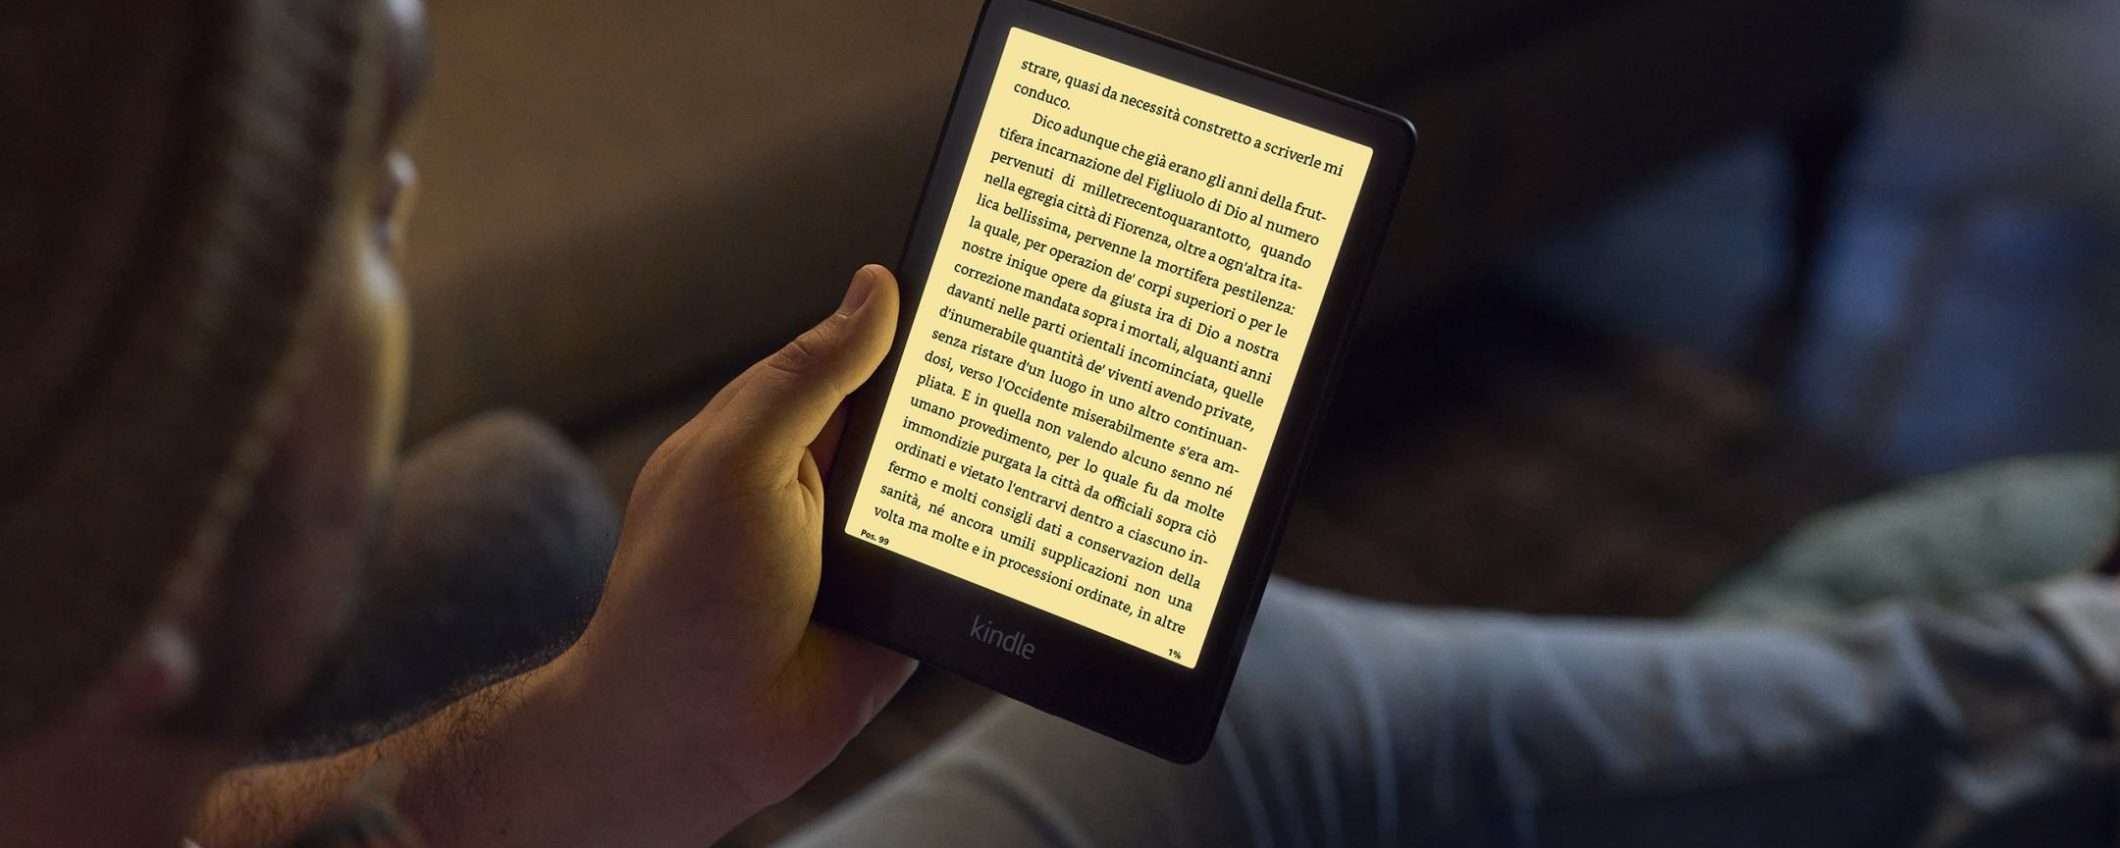 Amazon annuncia due nuovi Kindle Paperwhite